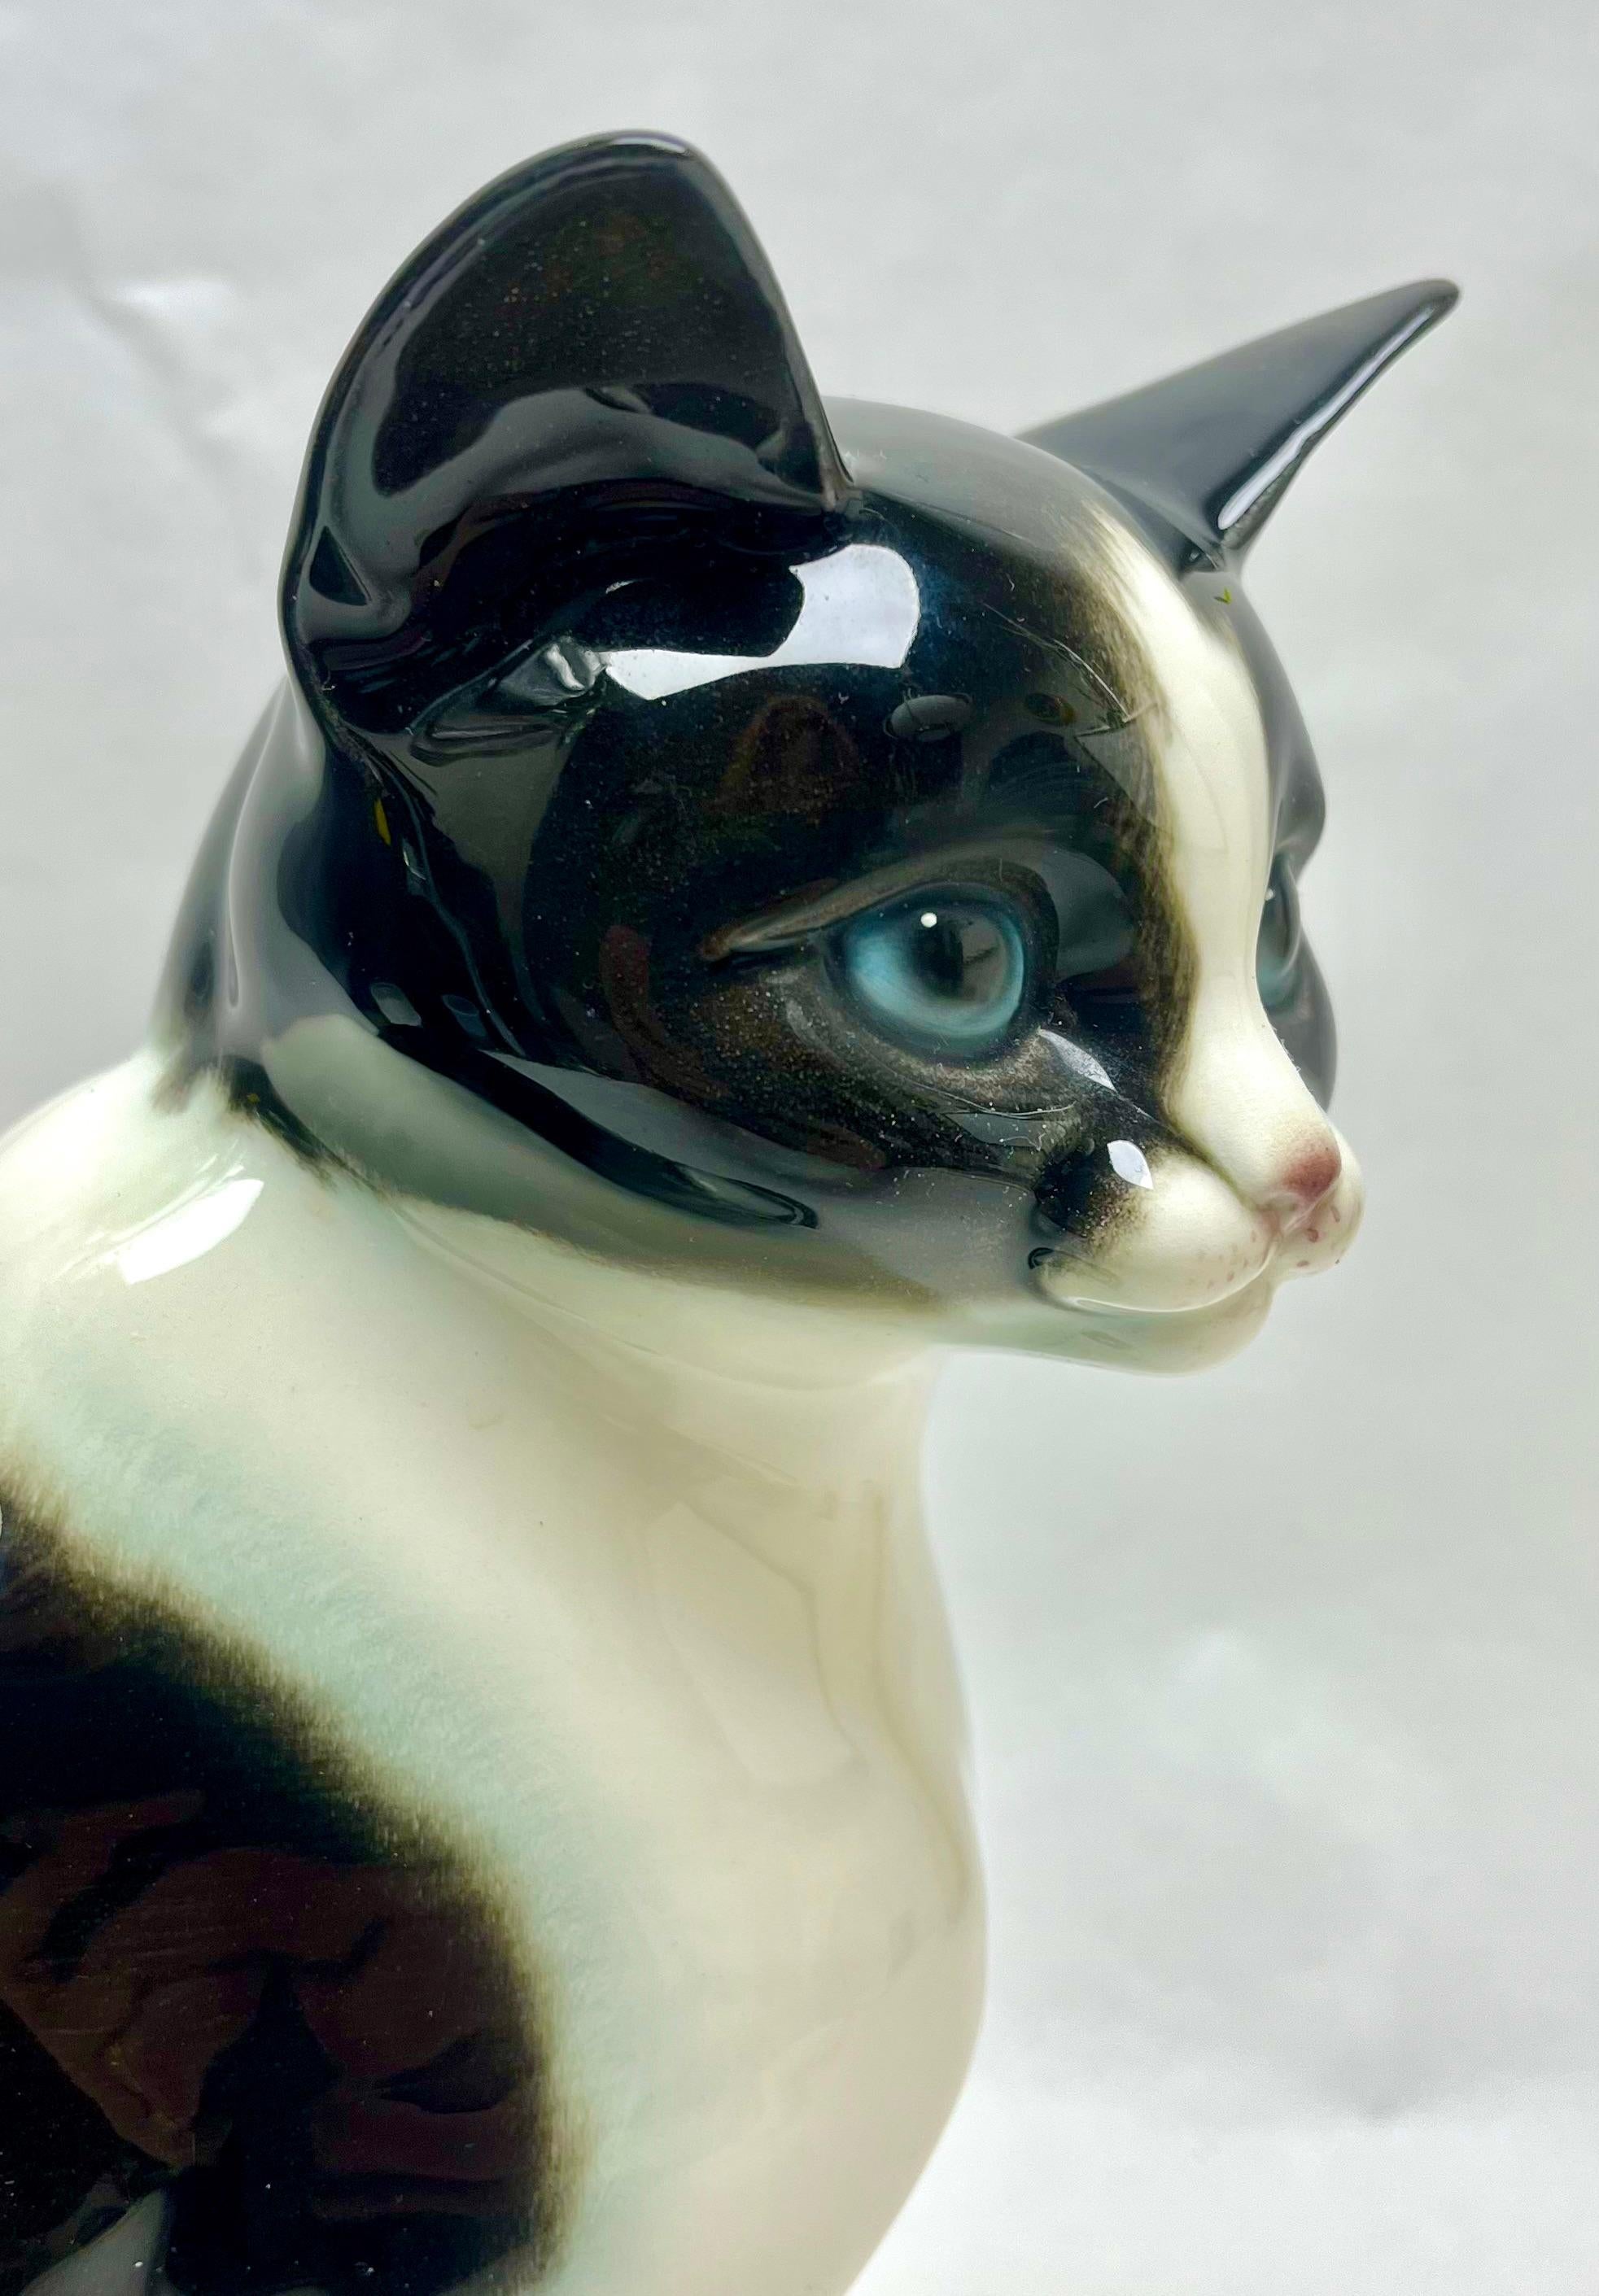 Goebel produzierte diese dramatische Porzellanfigur, die eine Katze darstellt, um 1960.
Das Stück ist in ausgezeichnetem Zustand und eine echte Schönheit.

Maße: Höhe: 10,63 in (27 cm)?
Durchmesser: 16 cm (6,3 Zoll)










 